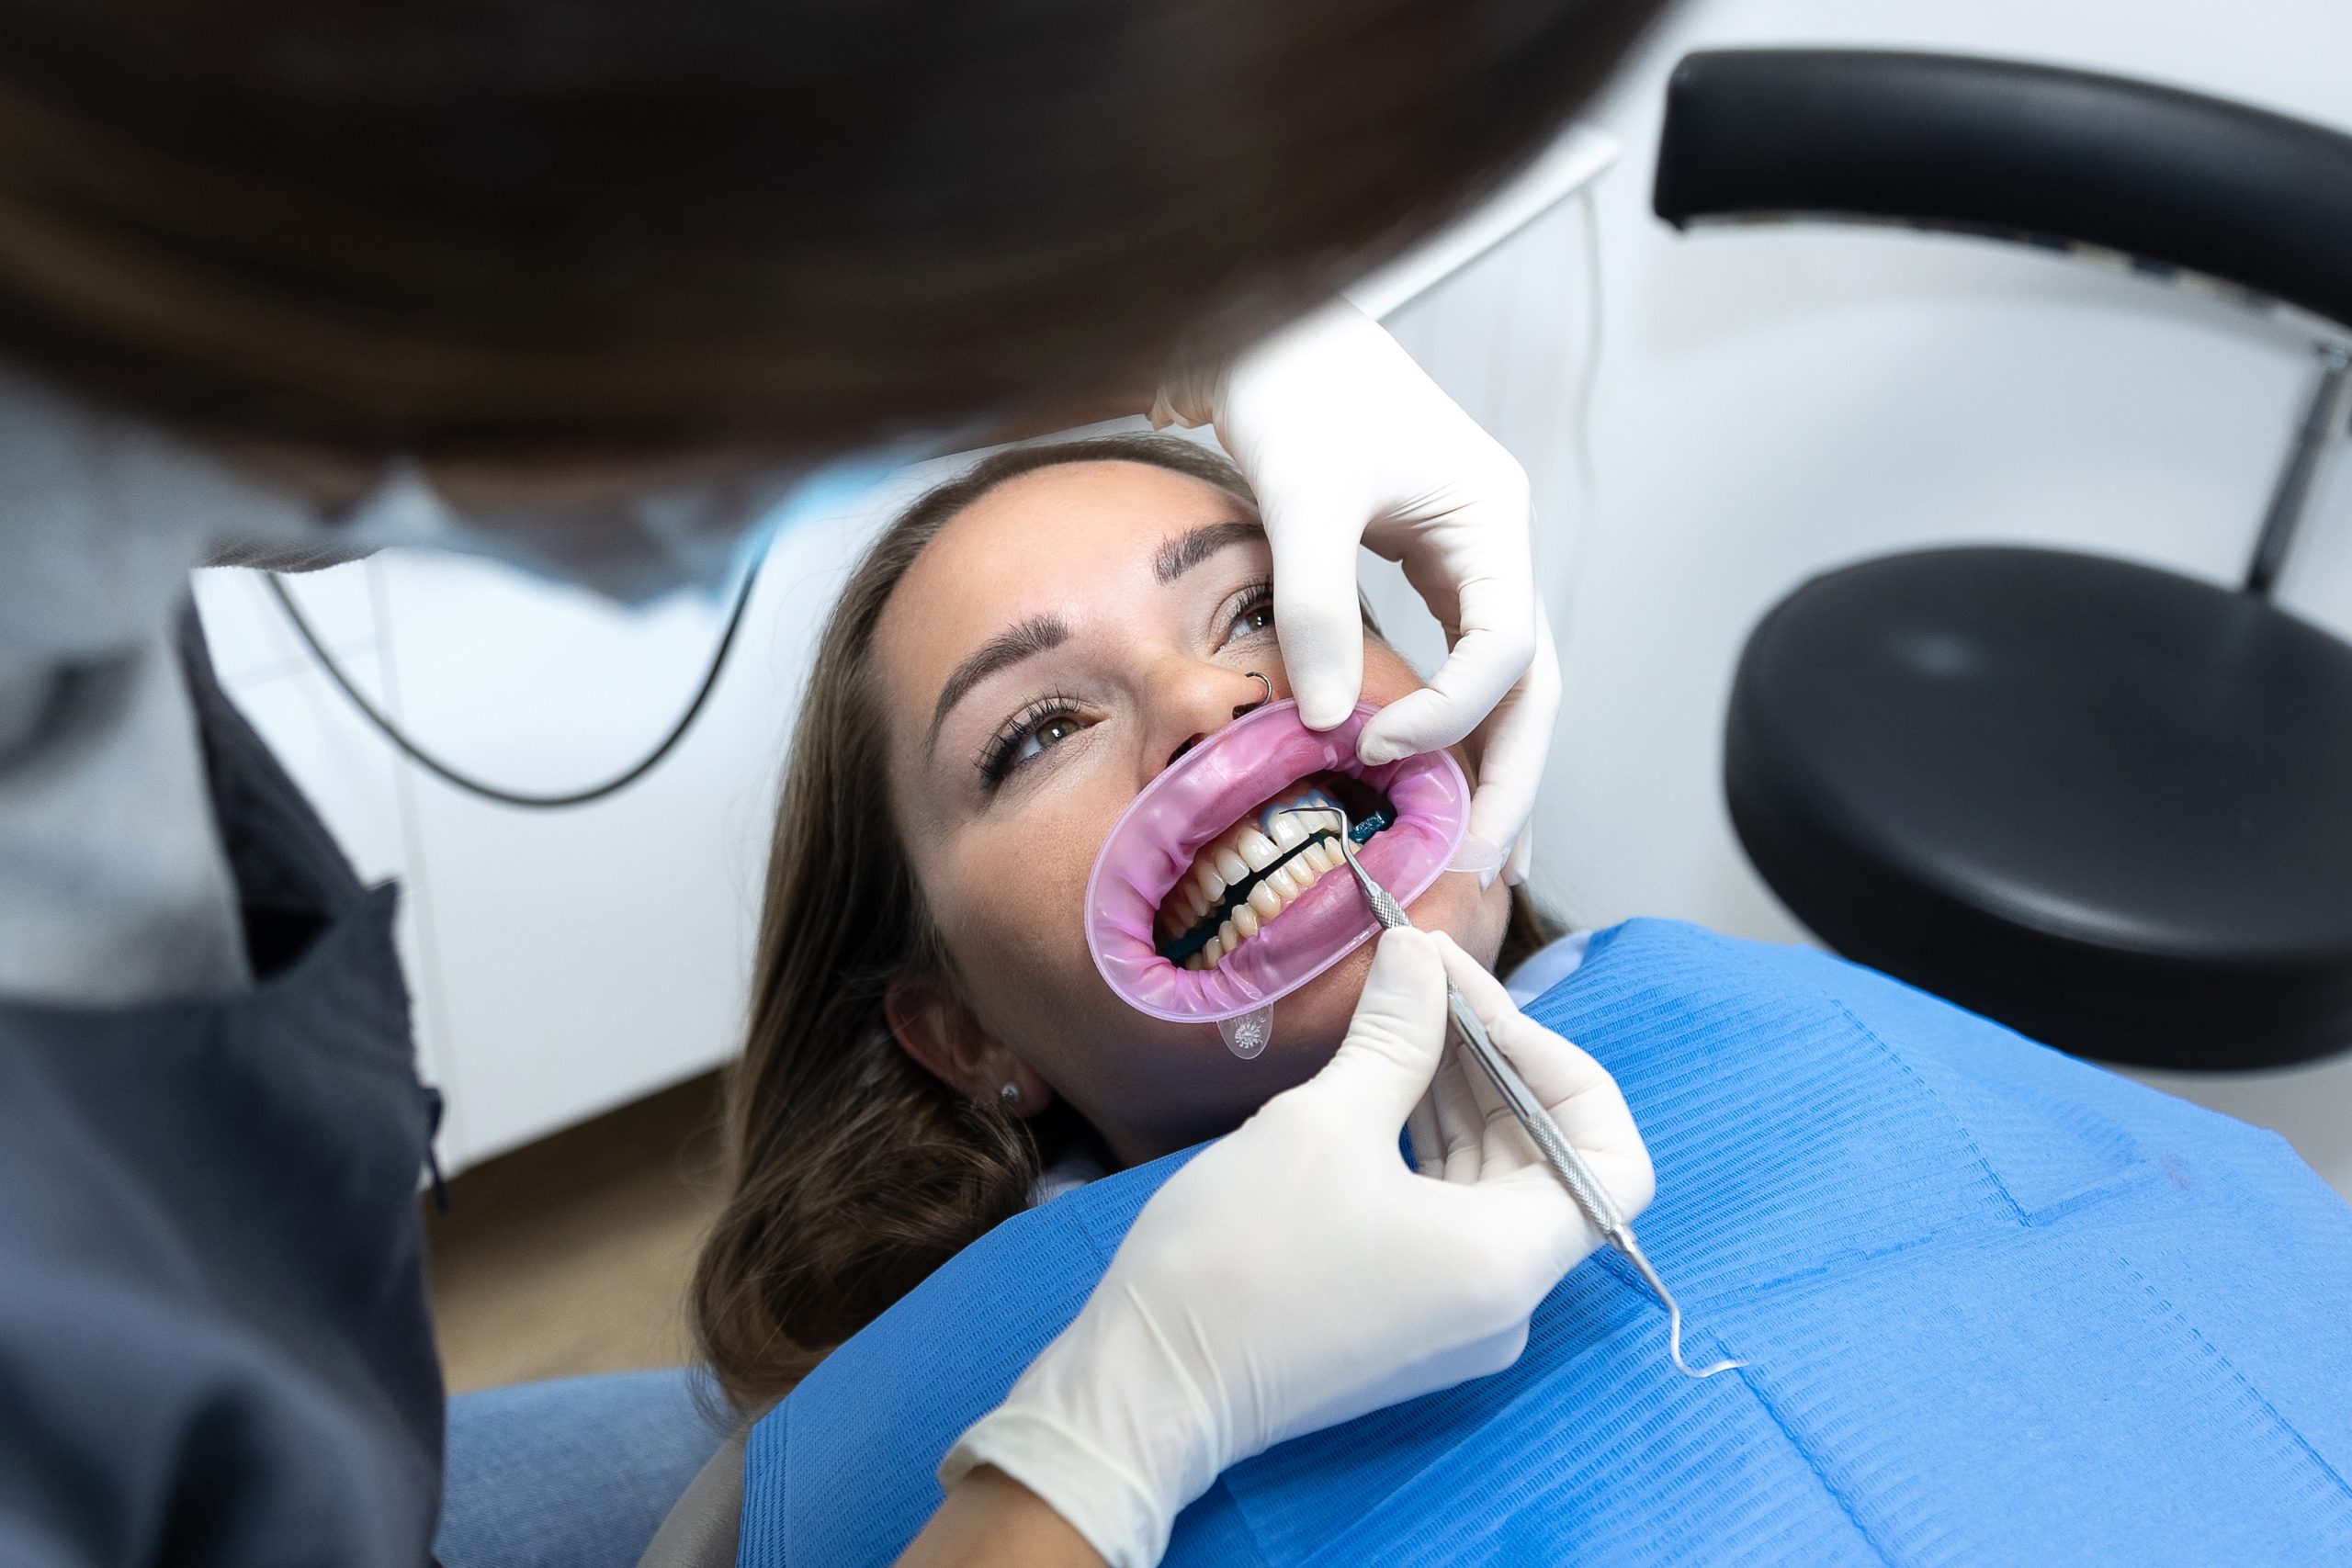 Revisión de ortodoncia dental de un dentista a una paciente